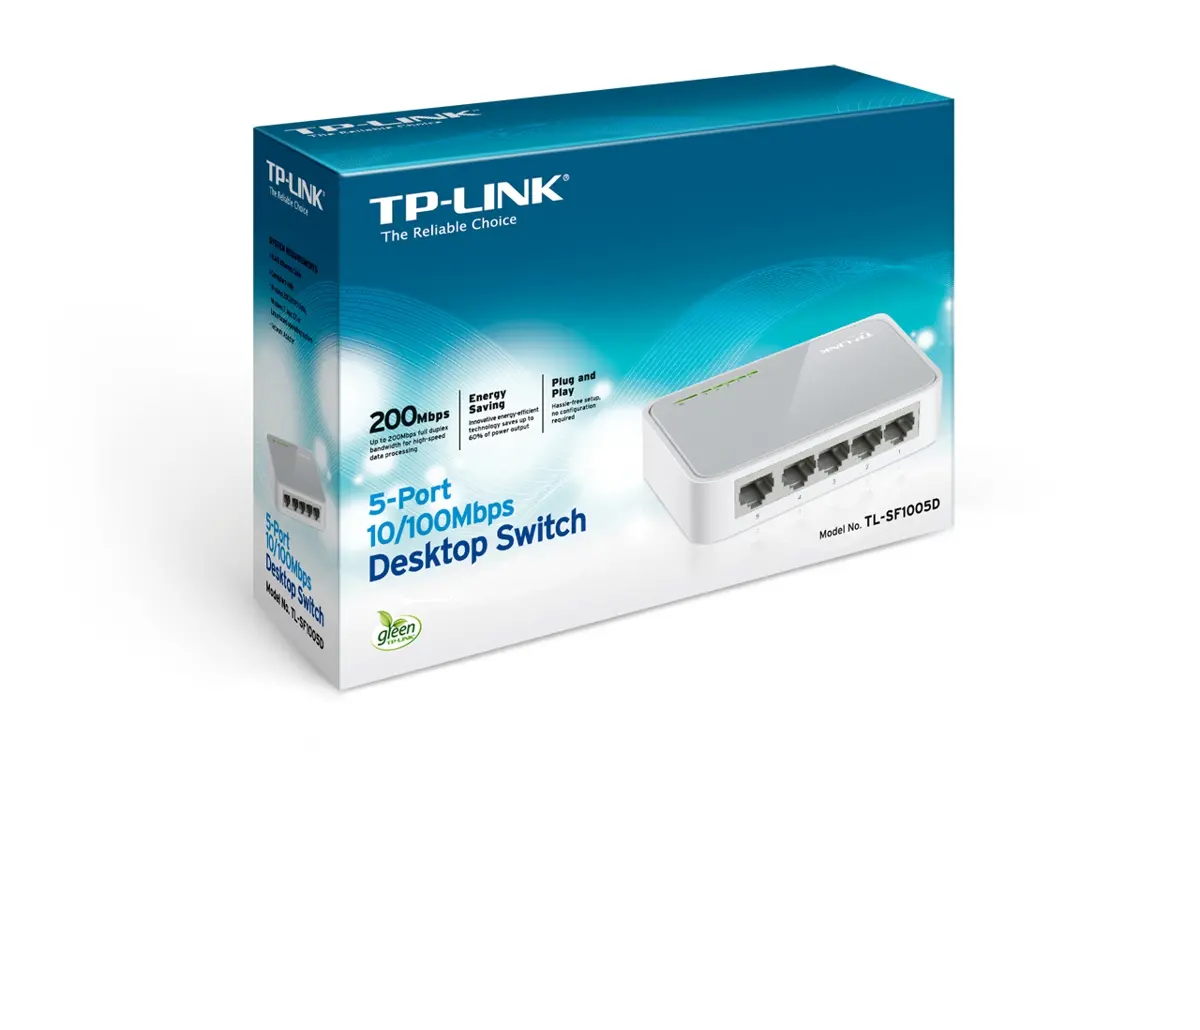 Switch TP-Link TL-SF1005D, 5-Port RJ45 10/100Mbps desktop switch, Fanless, Auto Negotiation/Auto MDI/MDIX, Plastic case - image 4